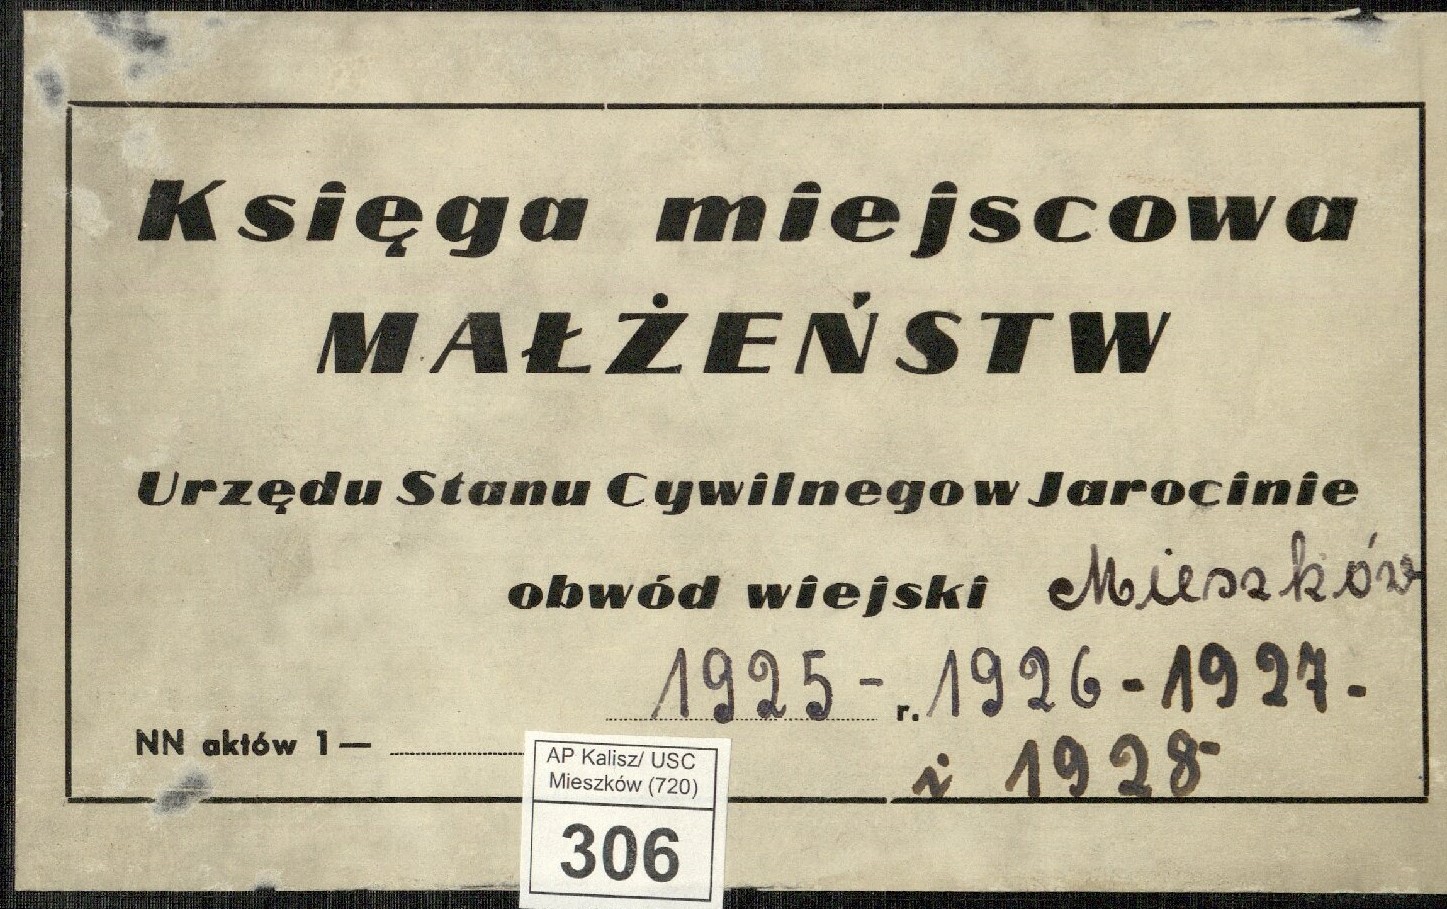 Nalepka papierowa z okładki księgi małżeństw Urzędu Stanu Cywilnego w Jarocinie.